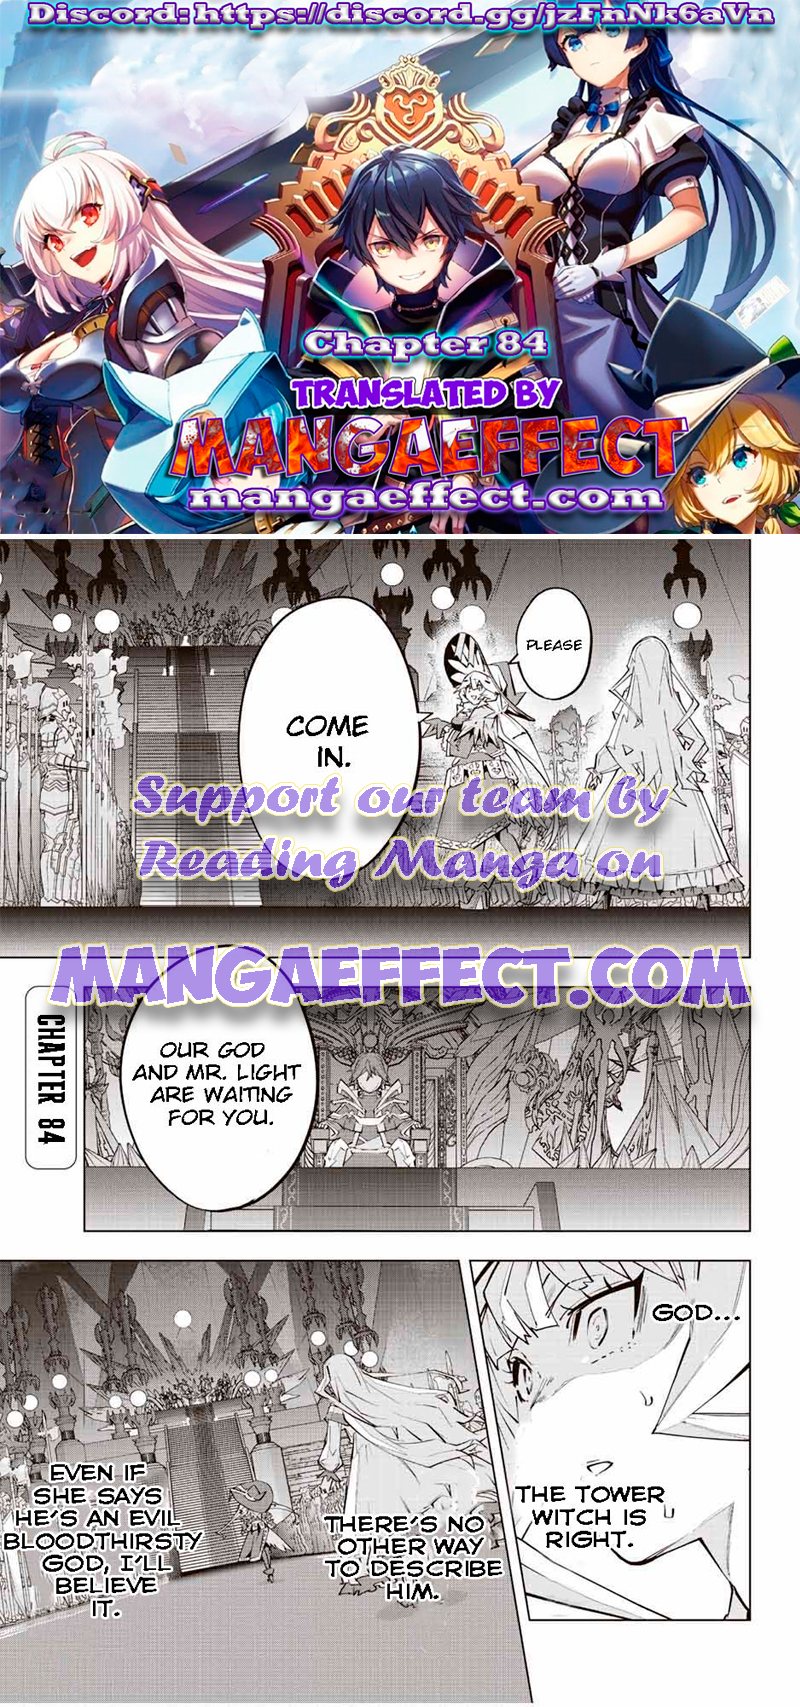 Read My Gift LVL 9999 Unlimited Gacha Manga English [New Chapters